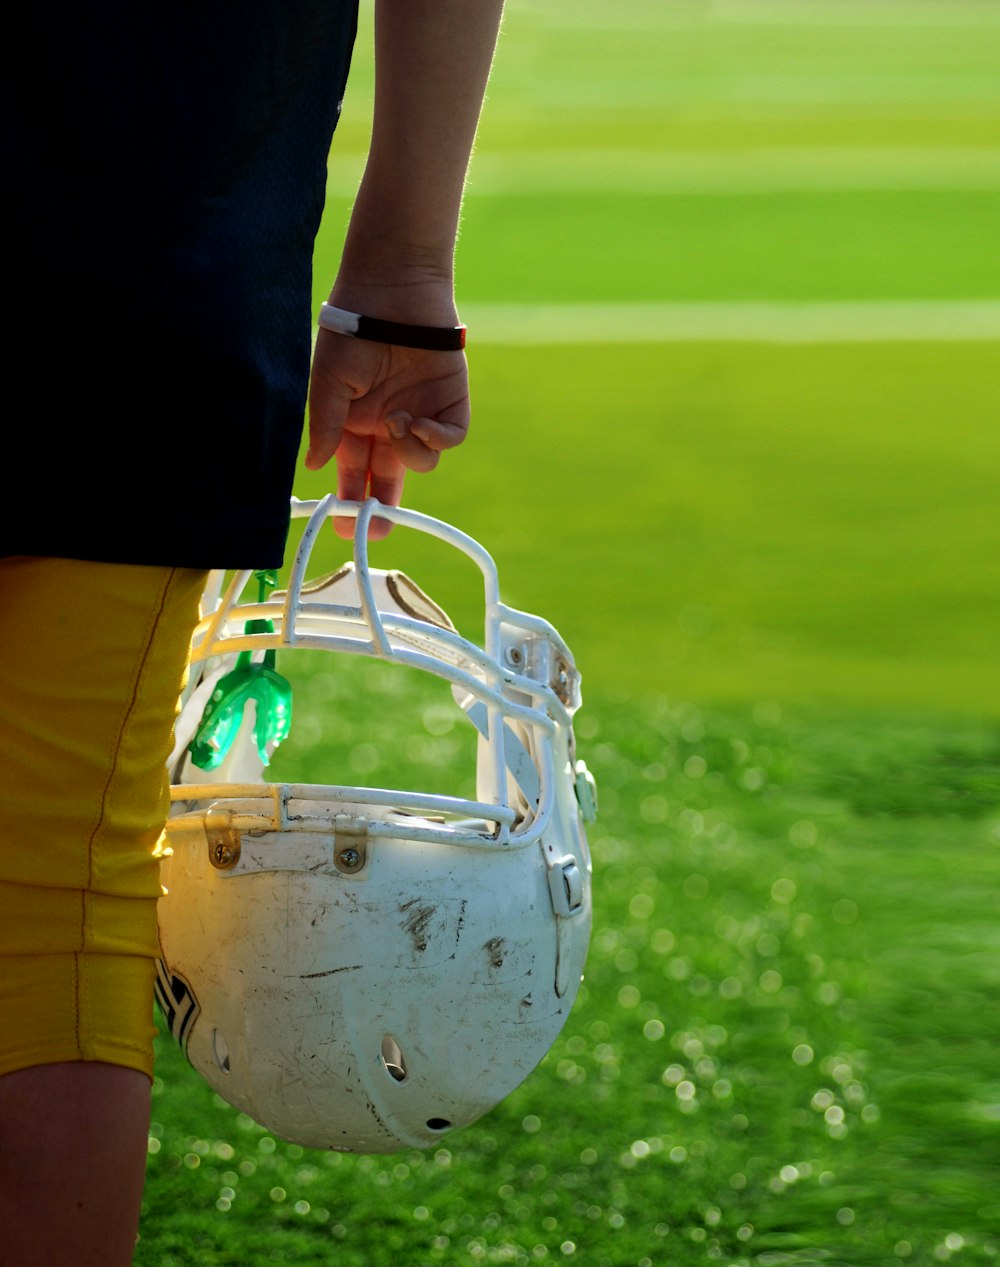 ヘルメットをかぶったサッカー選手の浅い焦点写真